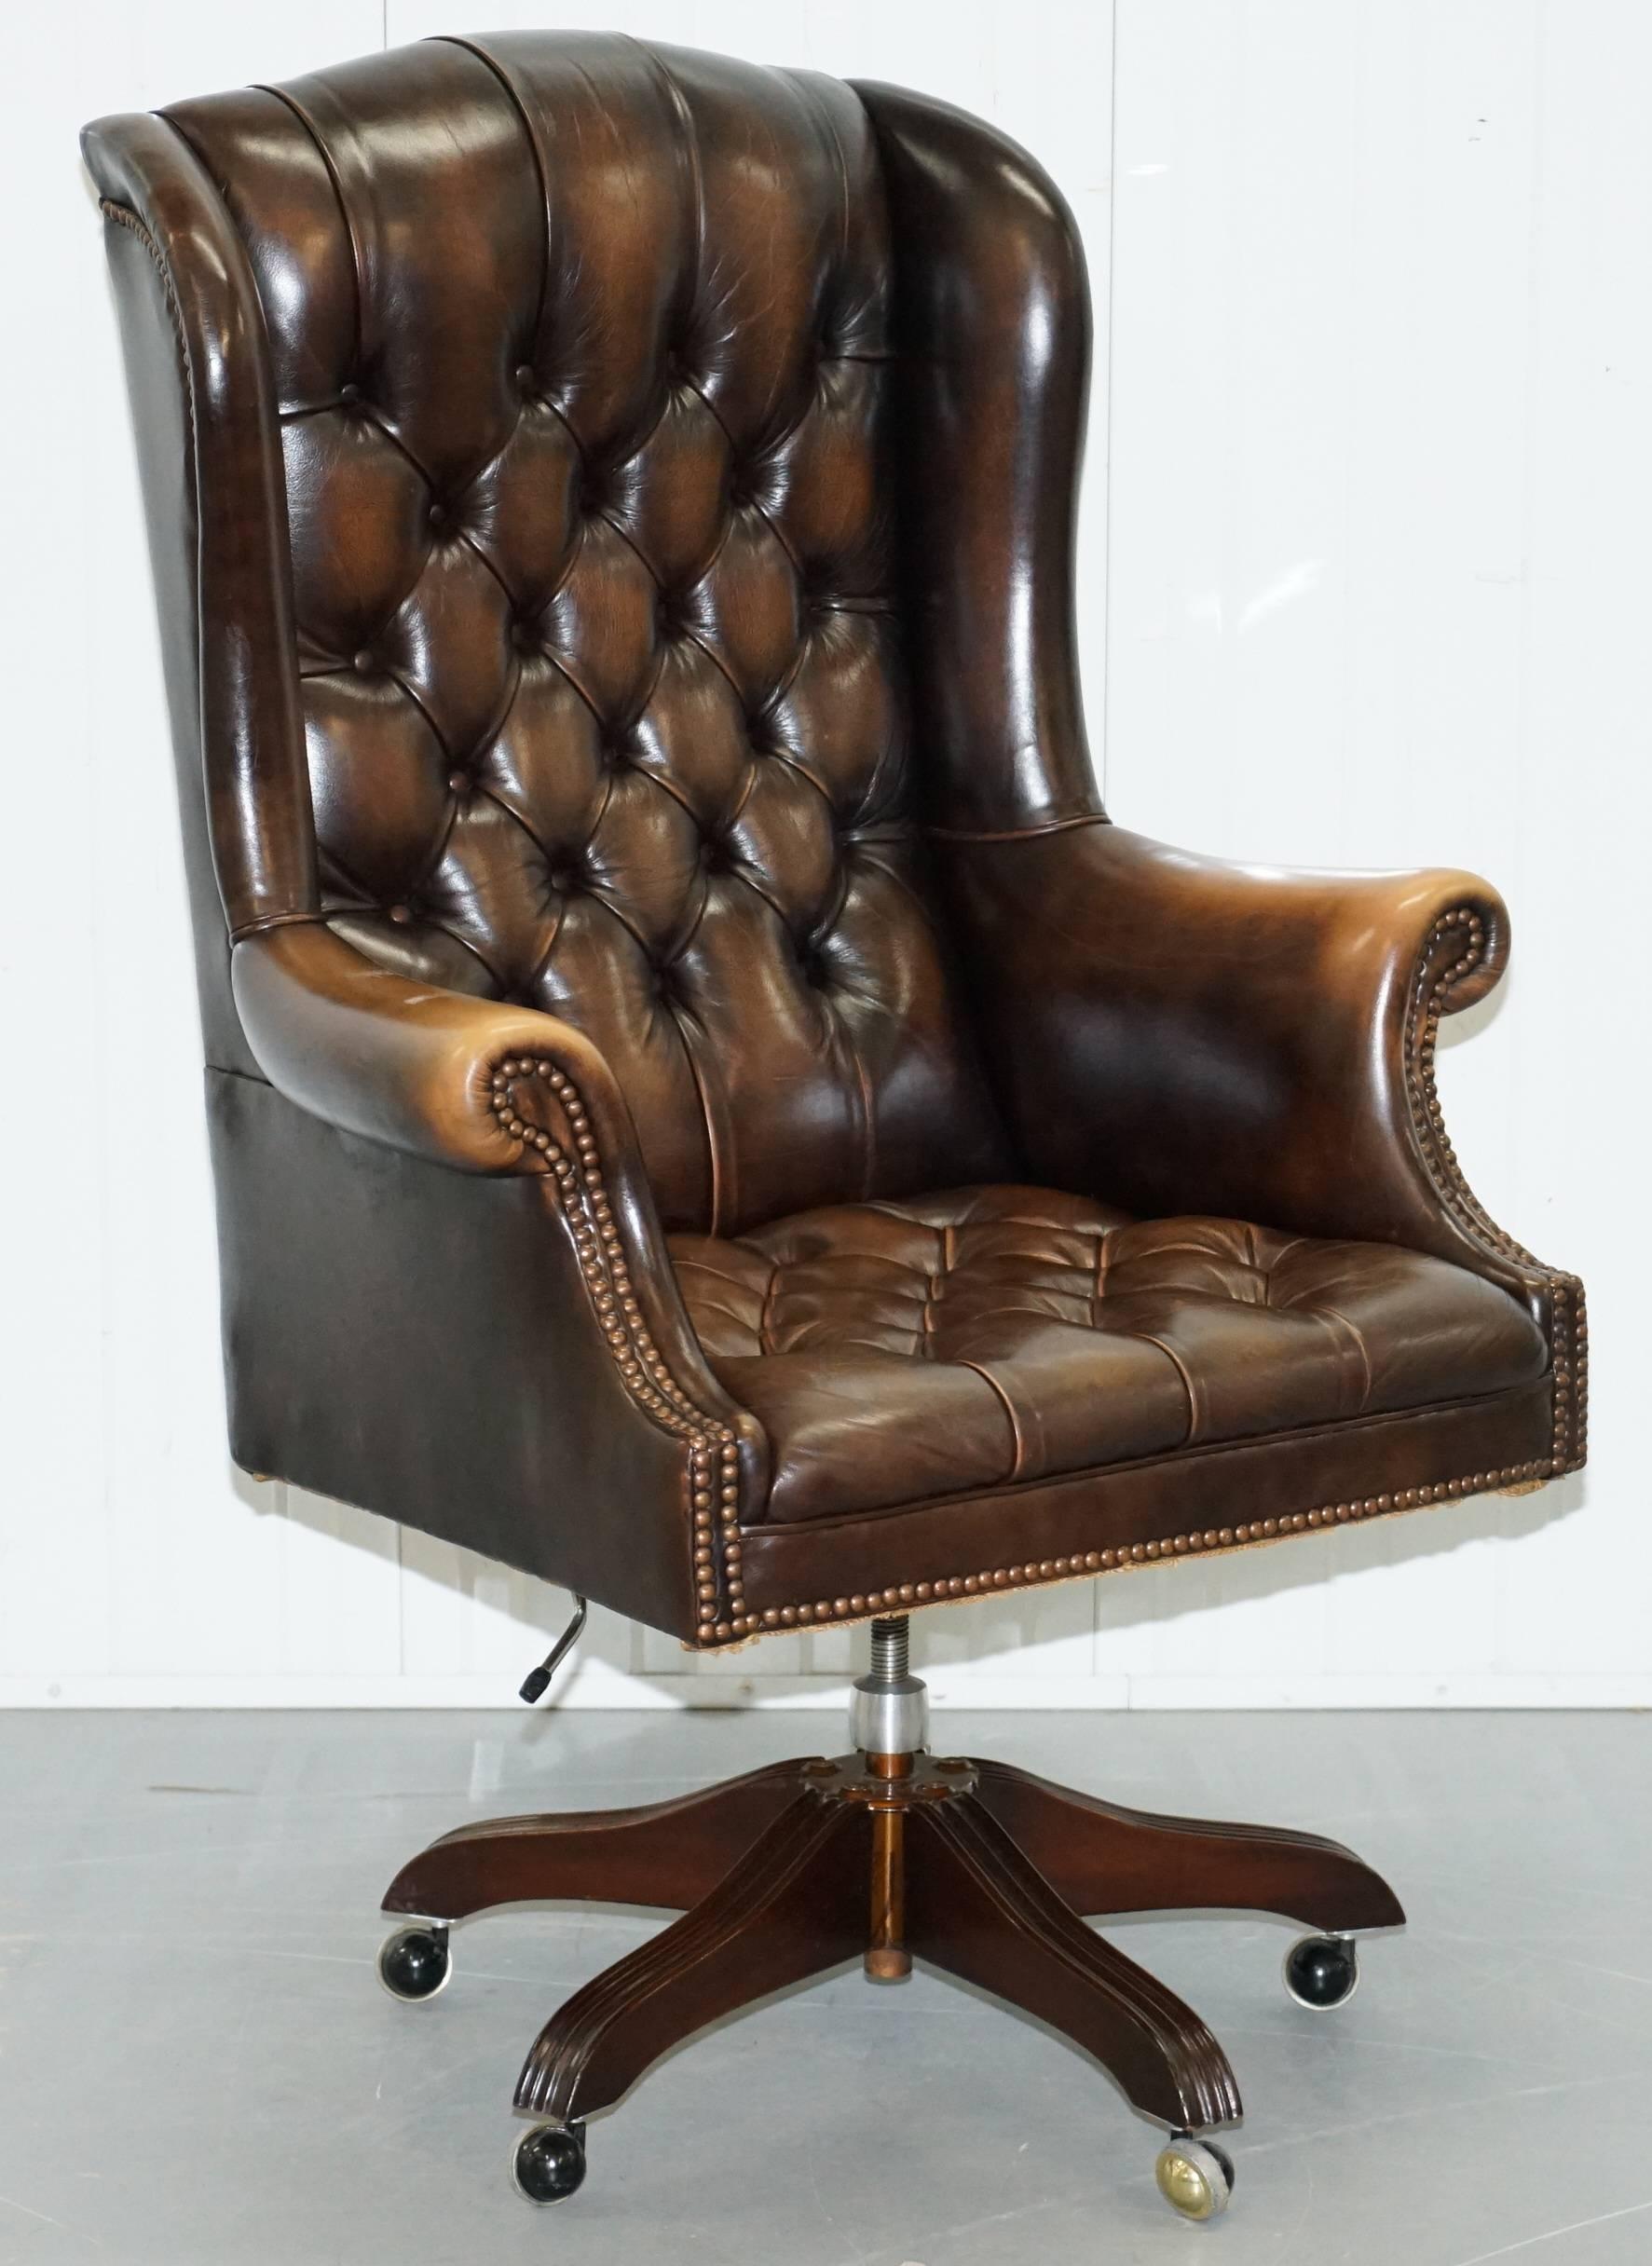 Nous sommes ravis de proposer à la vente cette belle sellerie Wade d'origine Chesterfield en cuir marron vieilli fauteuils directeurs de bureau capitaine à oreilles

Il s'agit à peu près de la chaise de capitaine de bureau la plus confortable sur le